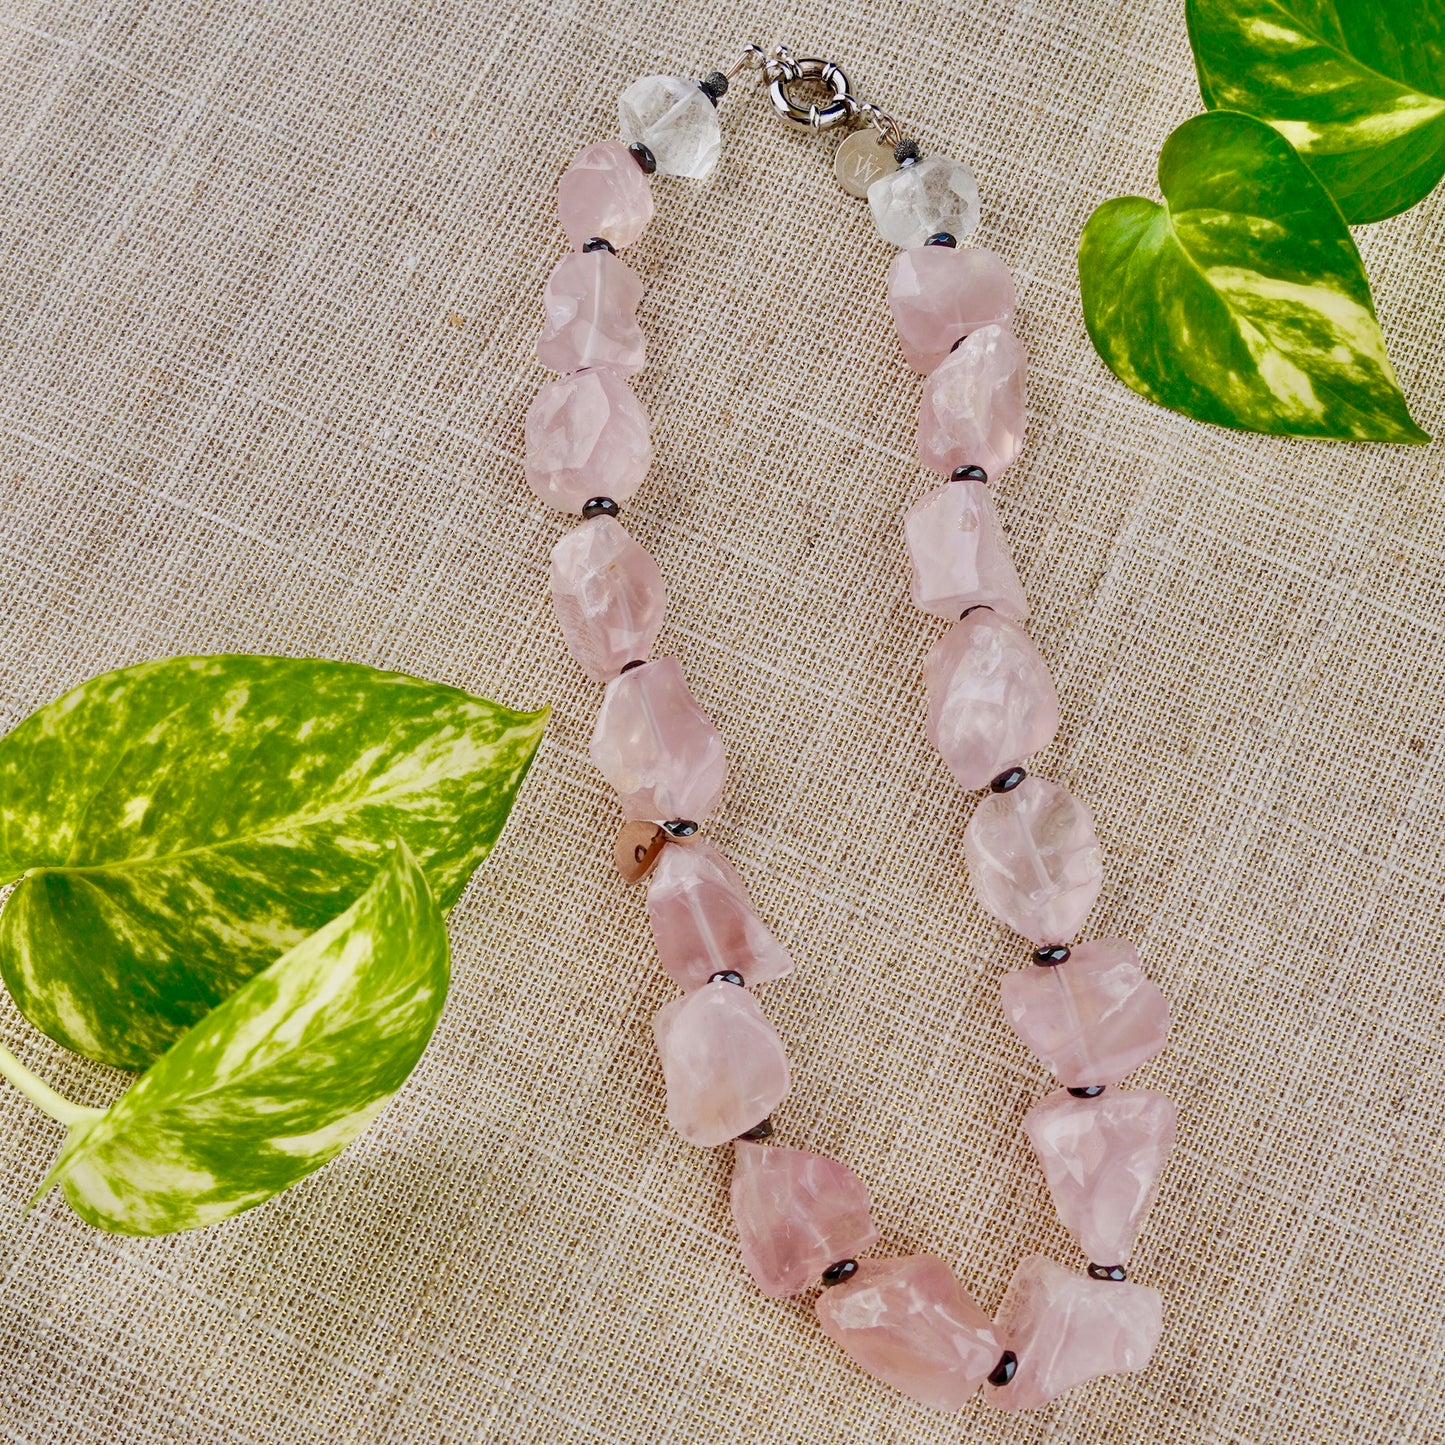 rose quartz and hematite beads necklace